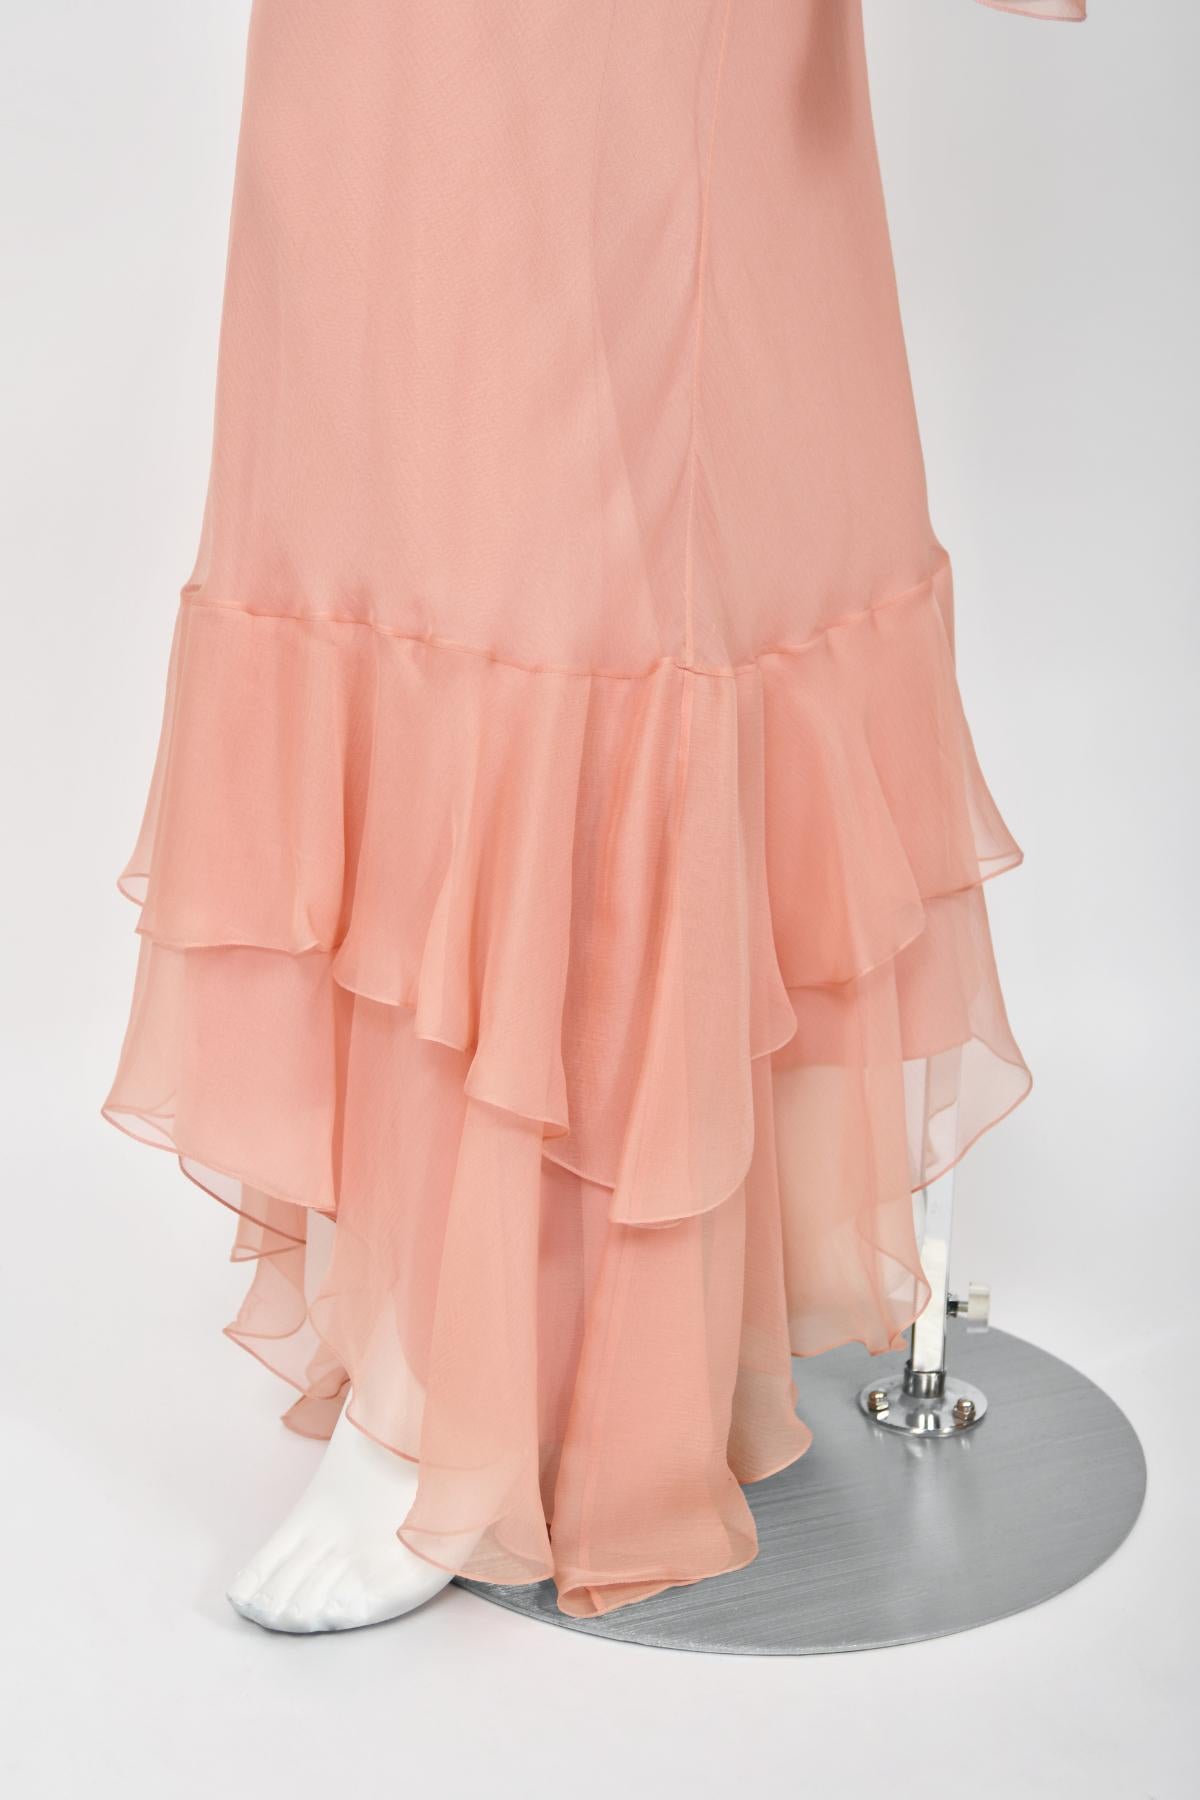 2008 John Galliano Blassrosa halbtransparentes Kleid aus Seidenchiffon mit drapierten Rüschen im Schrägschnitt 7